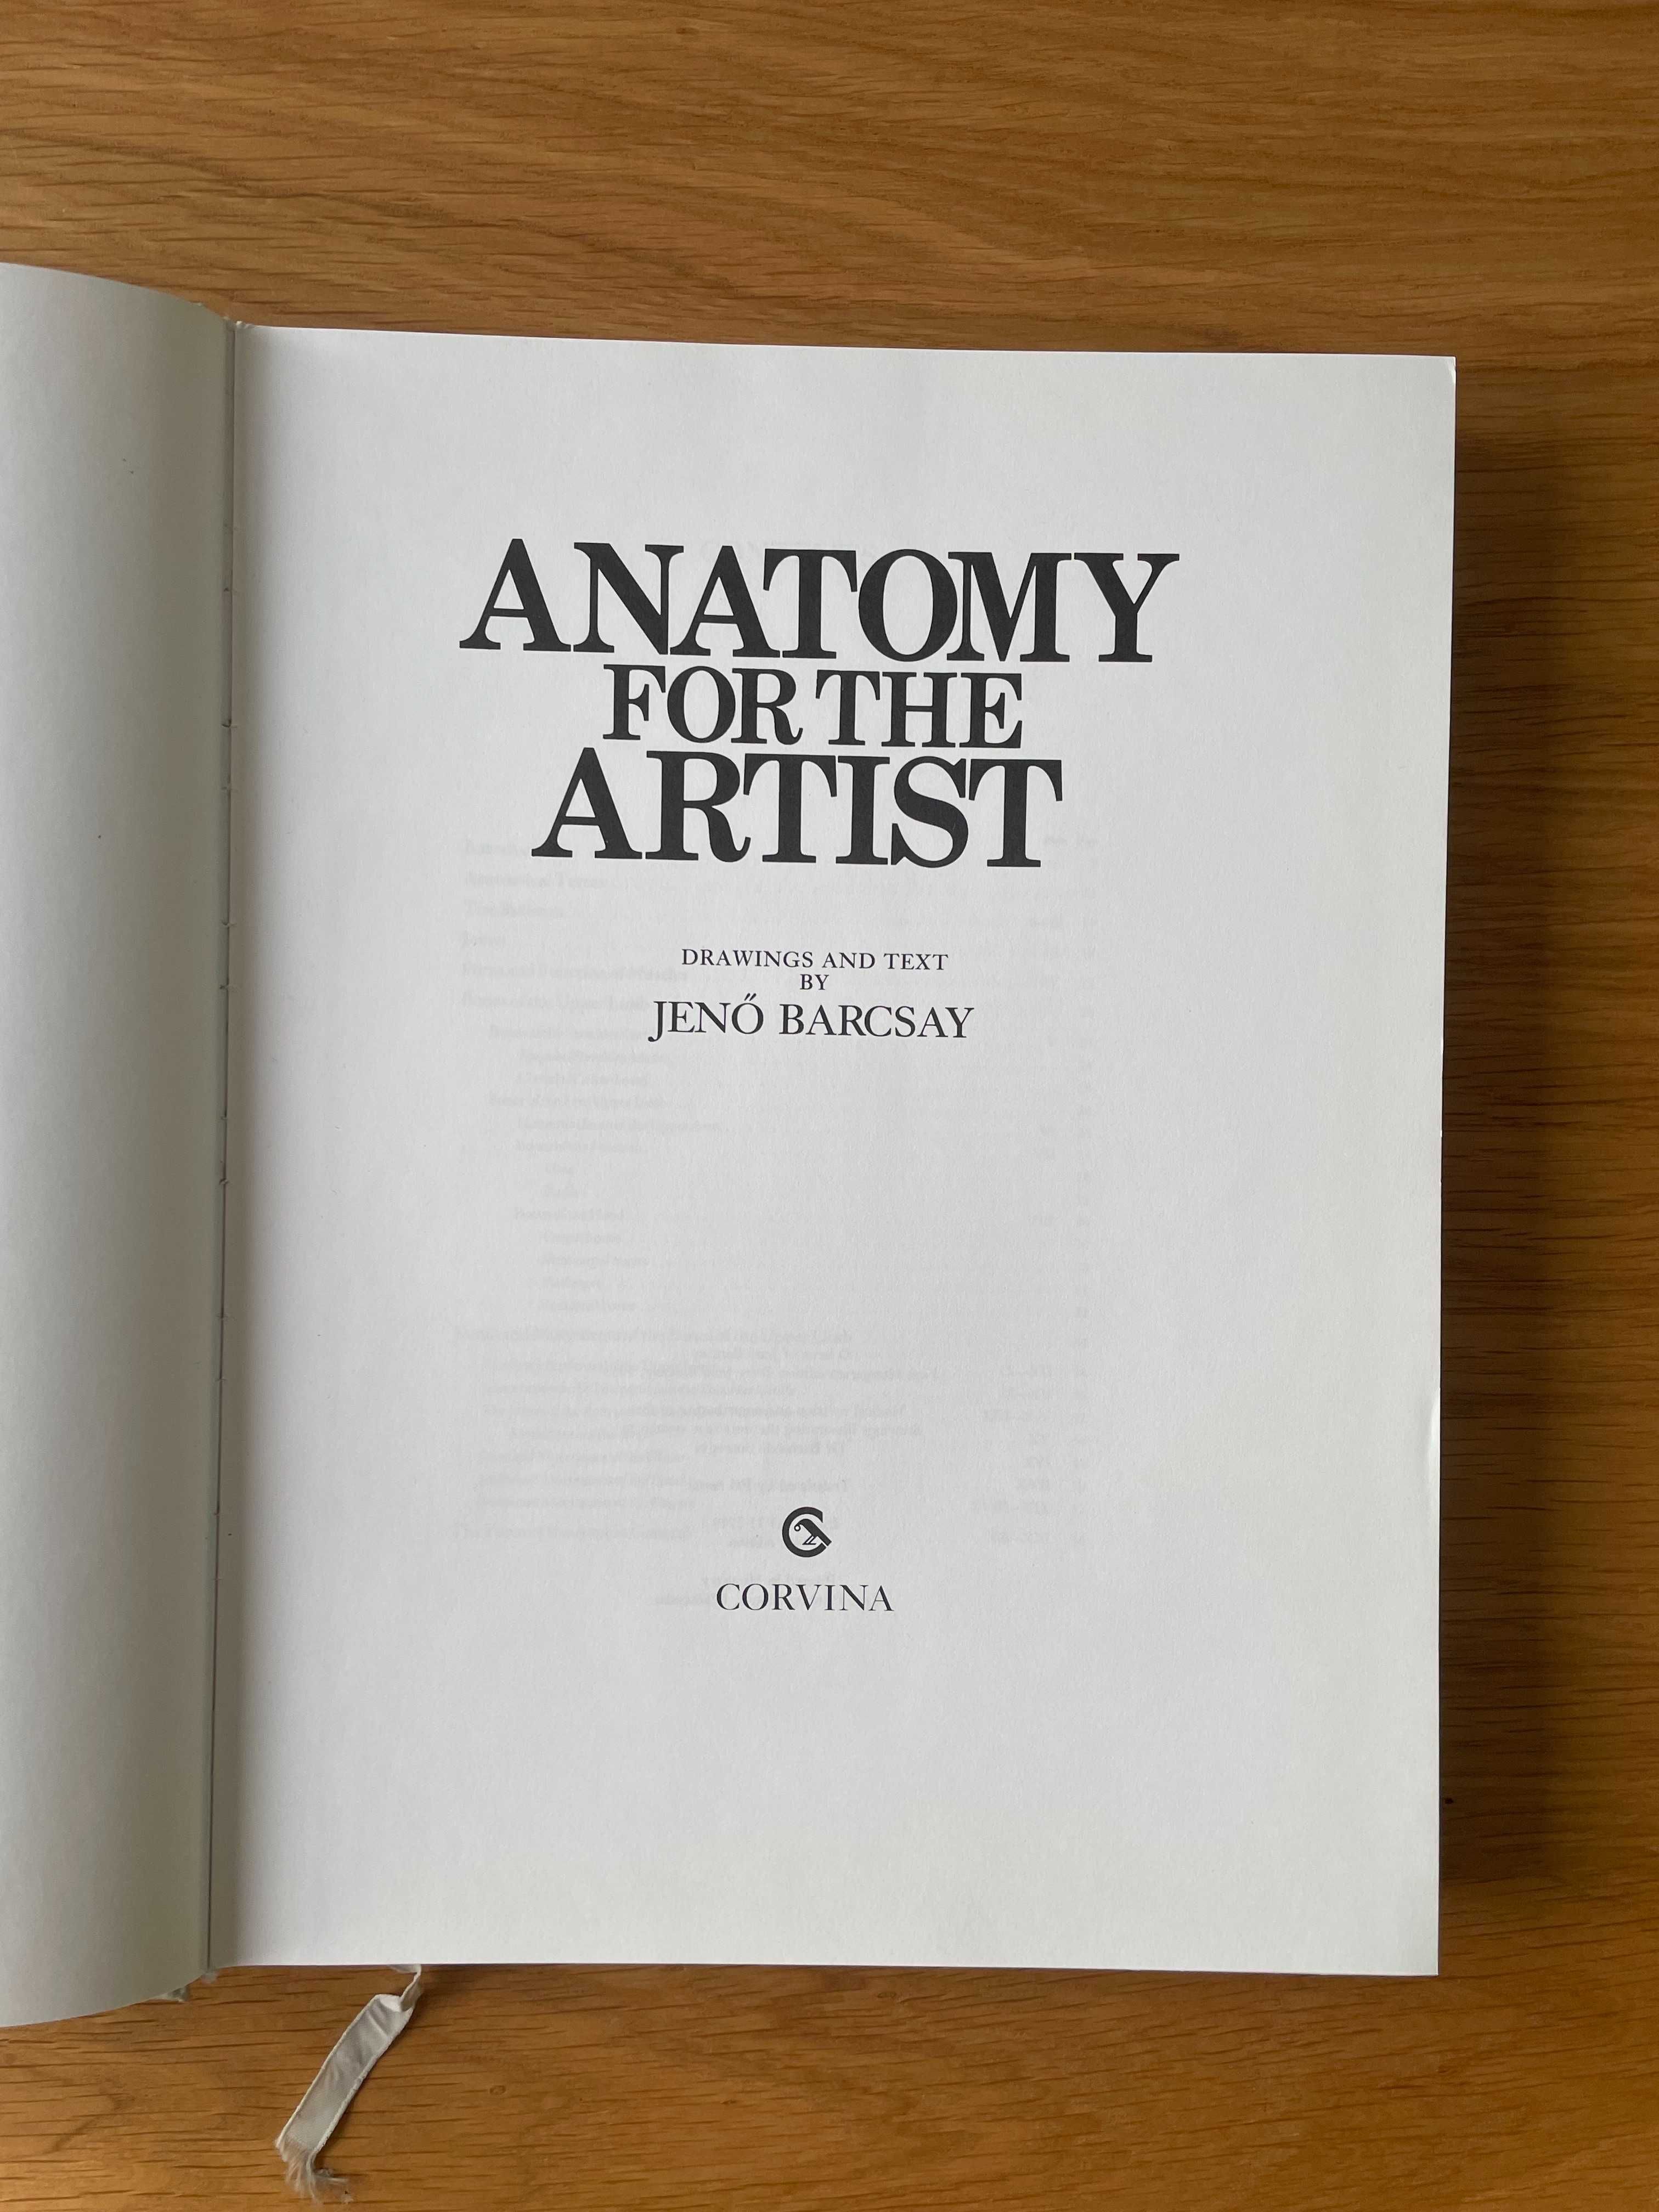 Album - Anatomy for the artist - Jeno Barcsay  - anatomia dla artysty